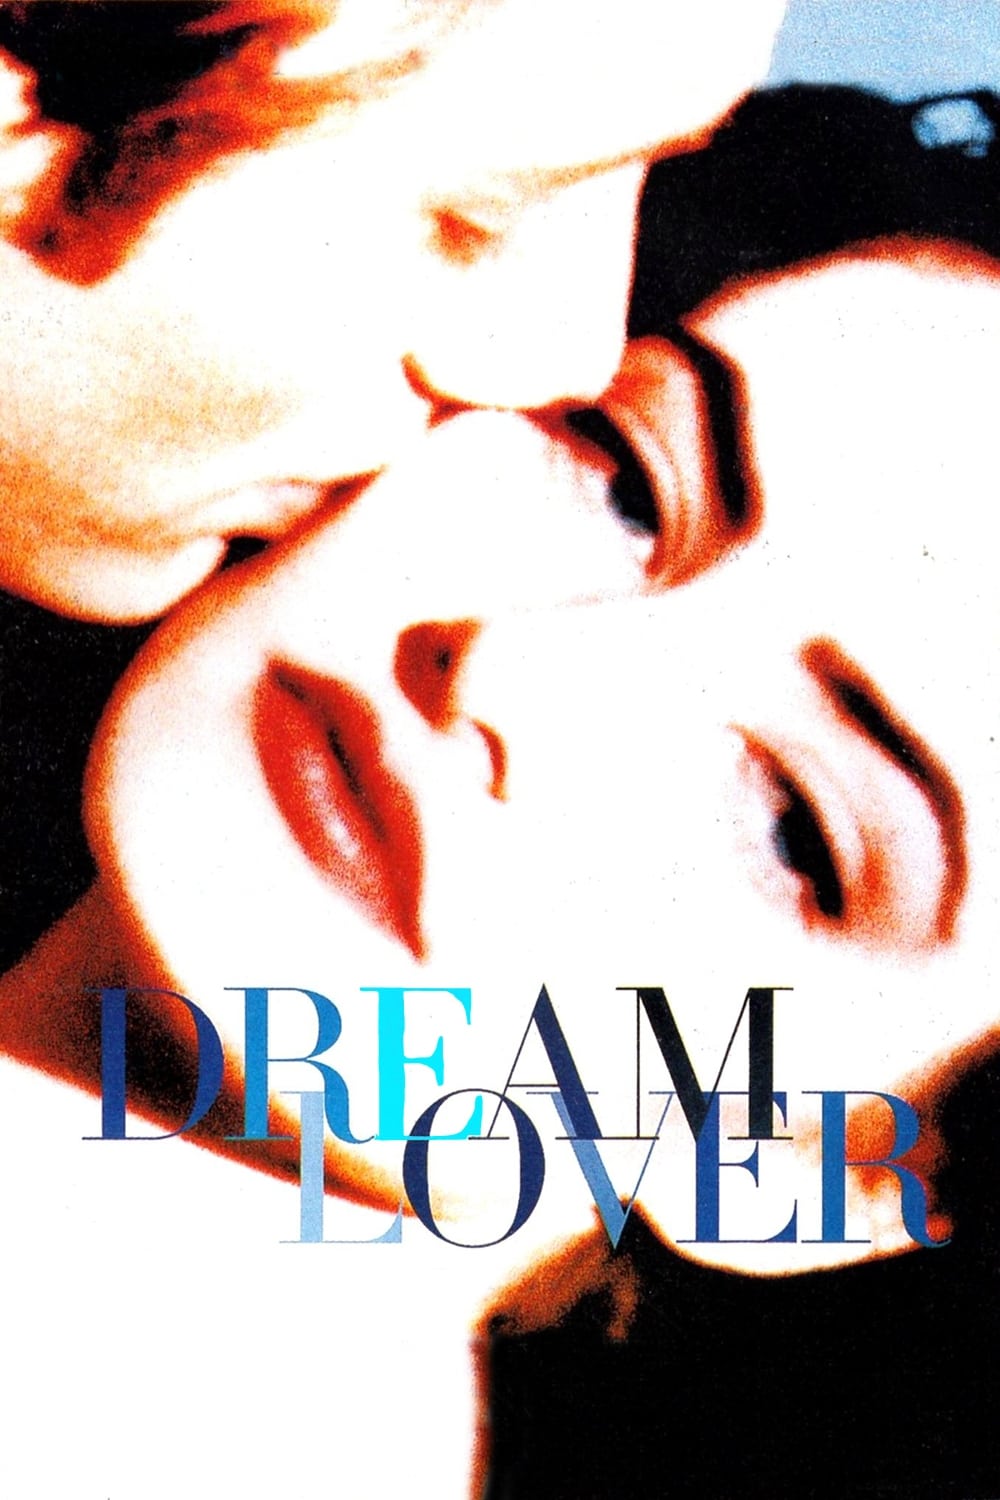 El amante ideal (1993)